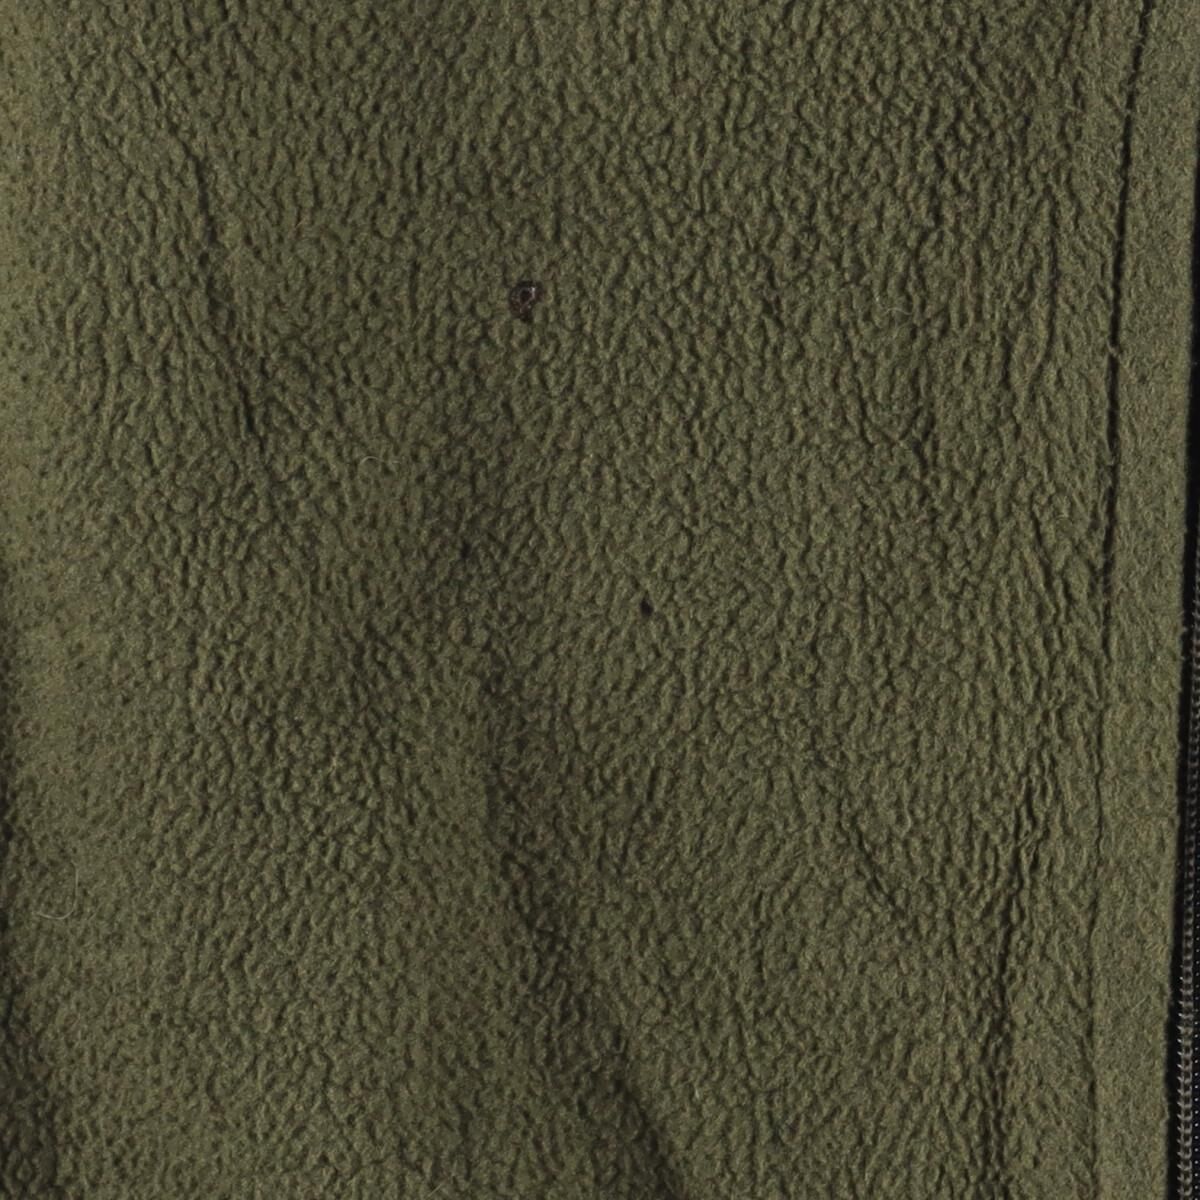 オールブラックカラー 08年製 パタゴニア Patagonia ライトウェイト レギュレーターR4 36151F8 フリースジャケット メンズXL /eaa266686